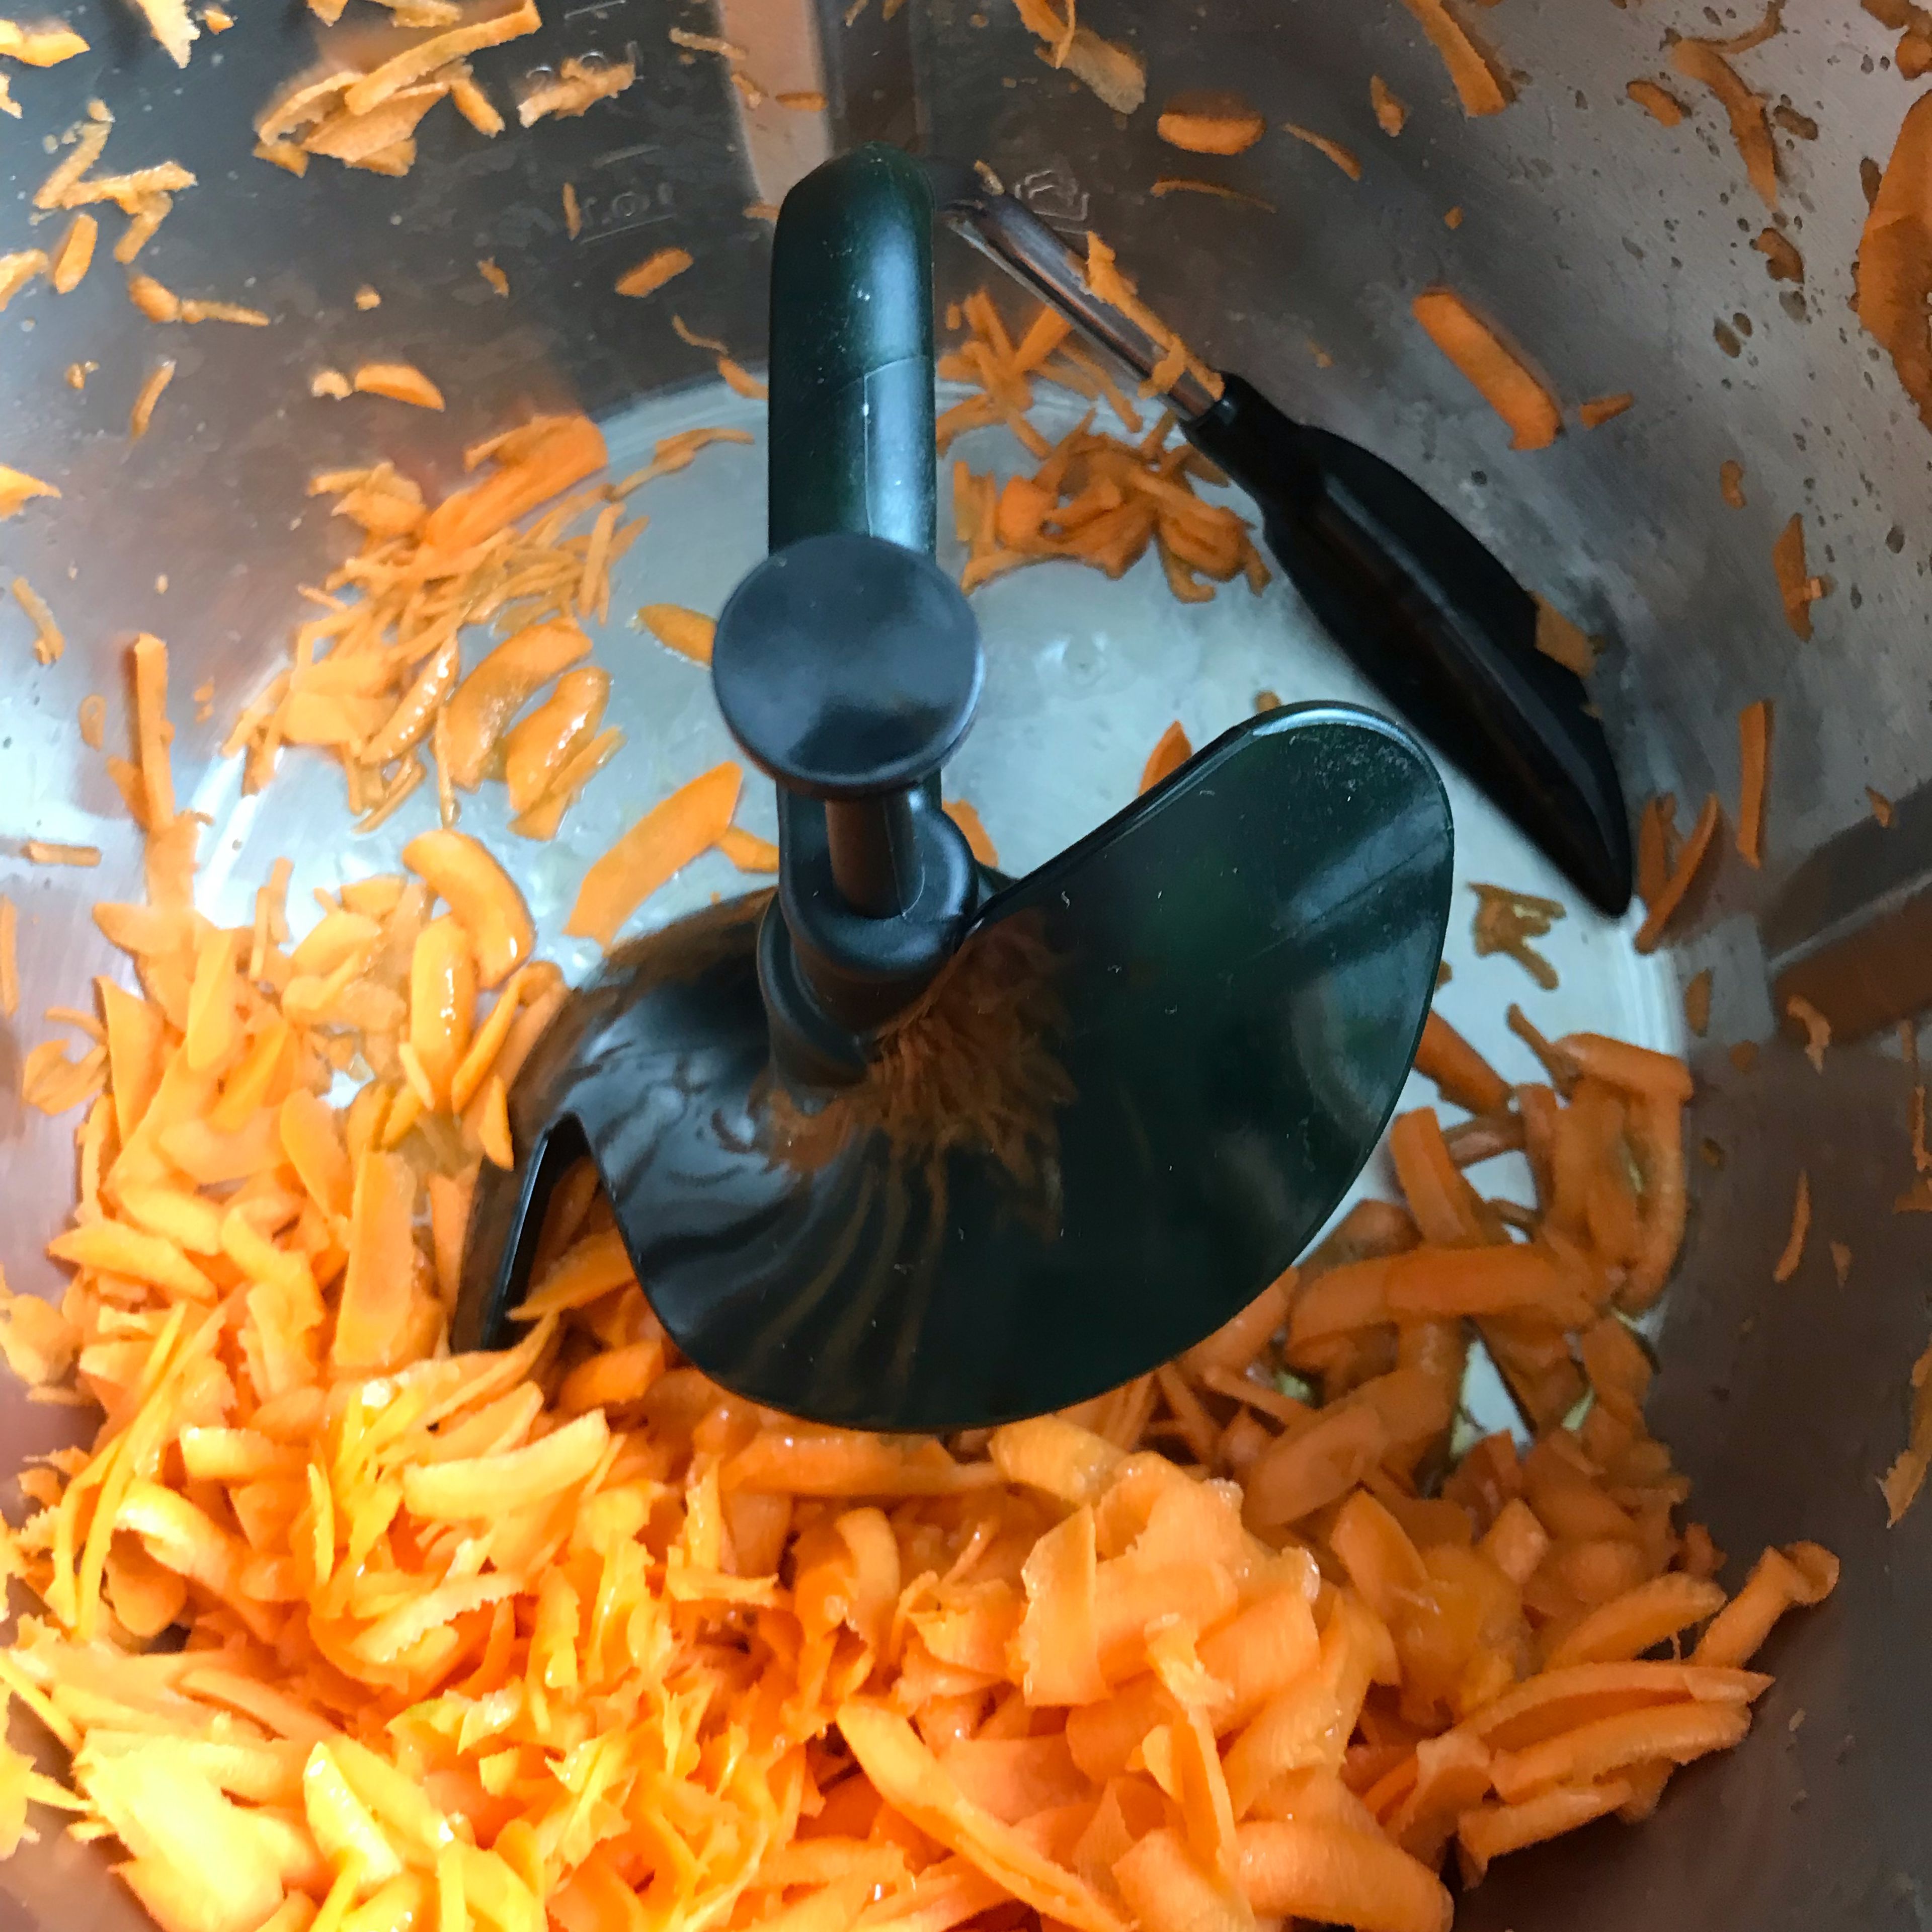 Den Inhalt kurz in eine Schüssel umfüllen und den 3D-Rührer einsetzen. Danach die gehobelten Karotten wieder in den Topf geben.